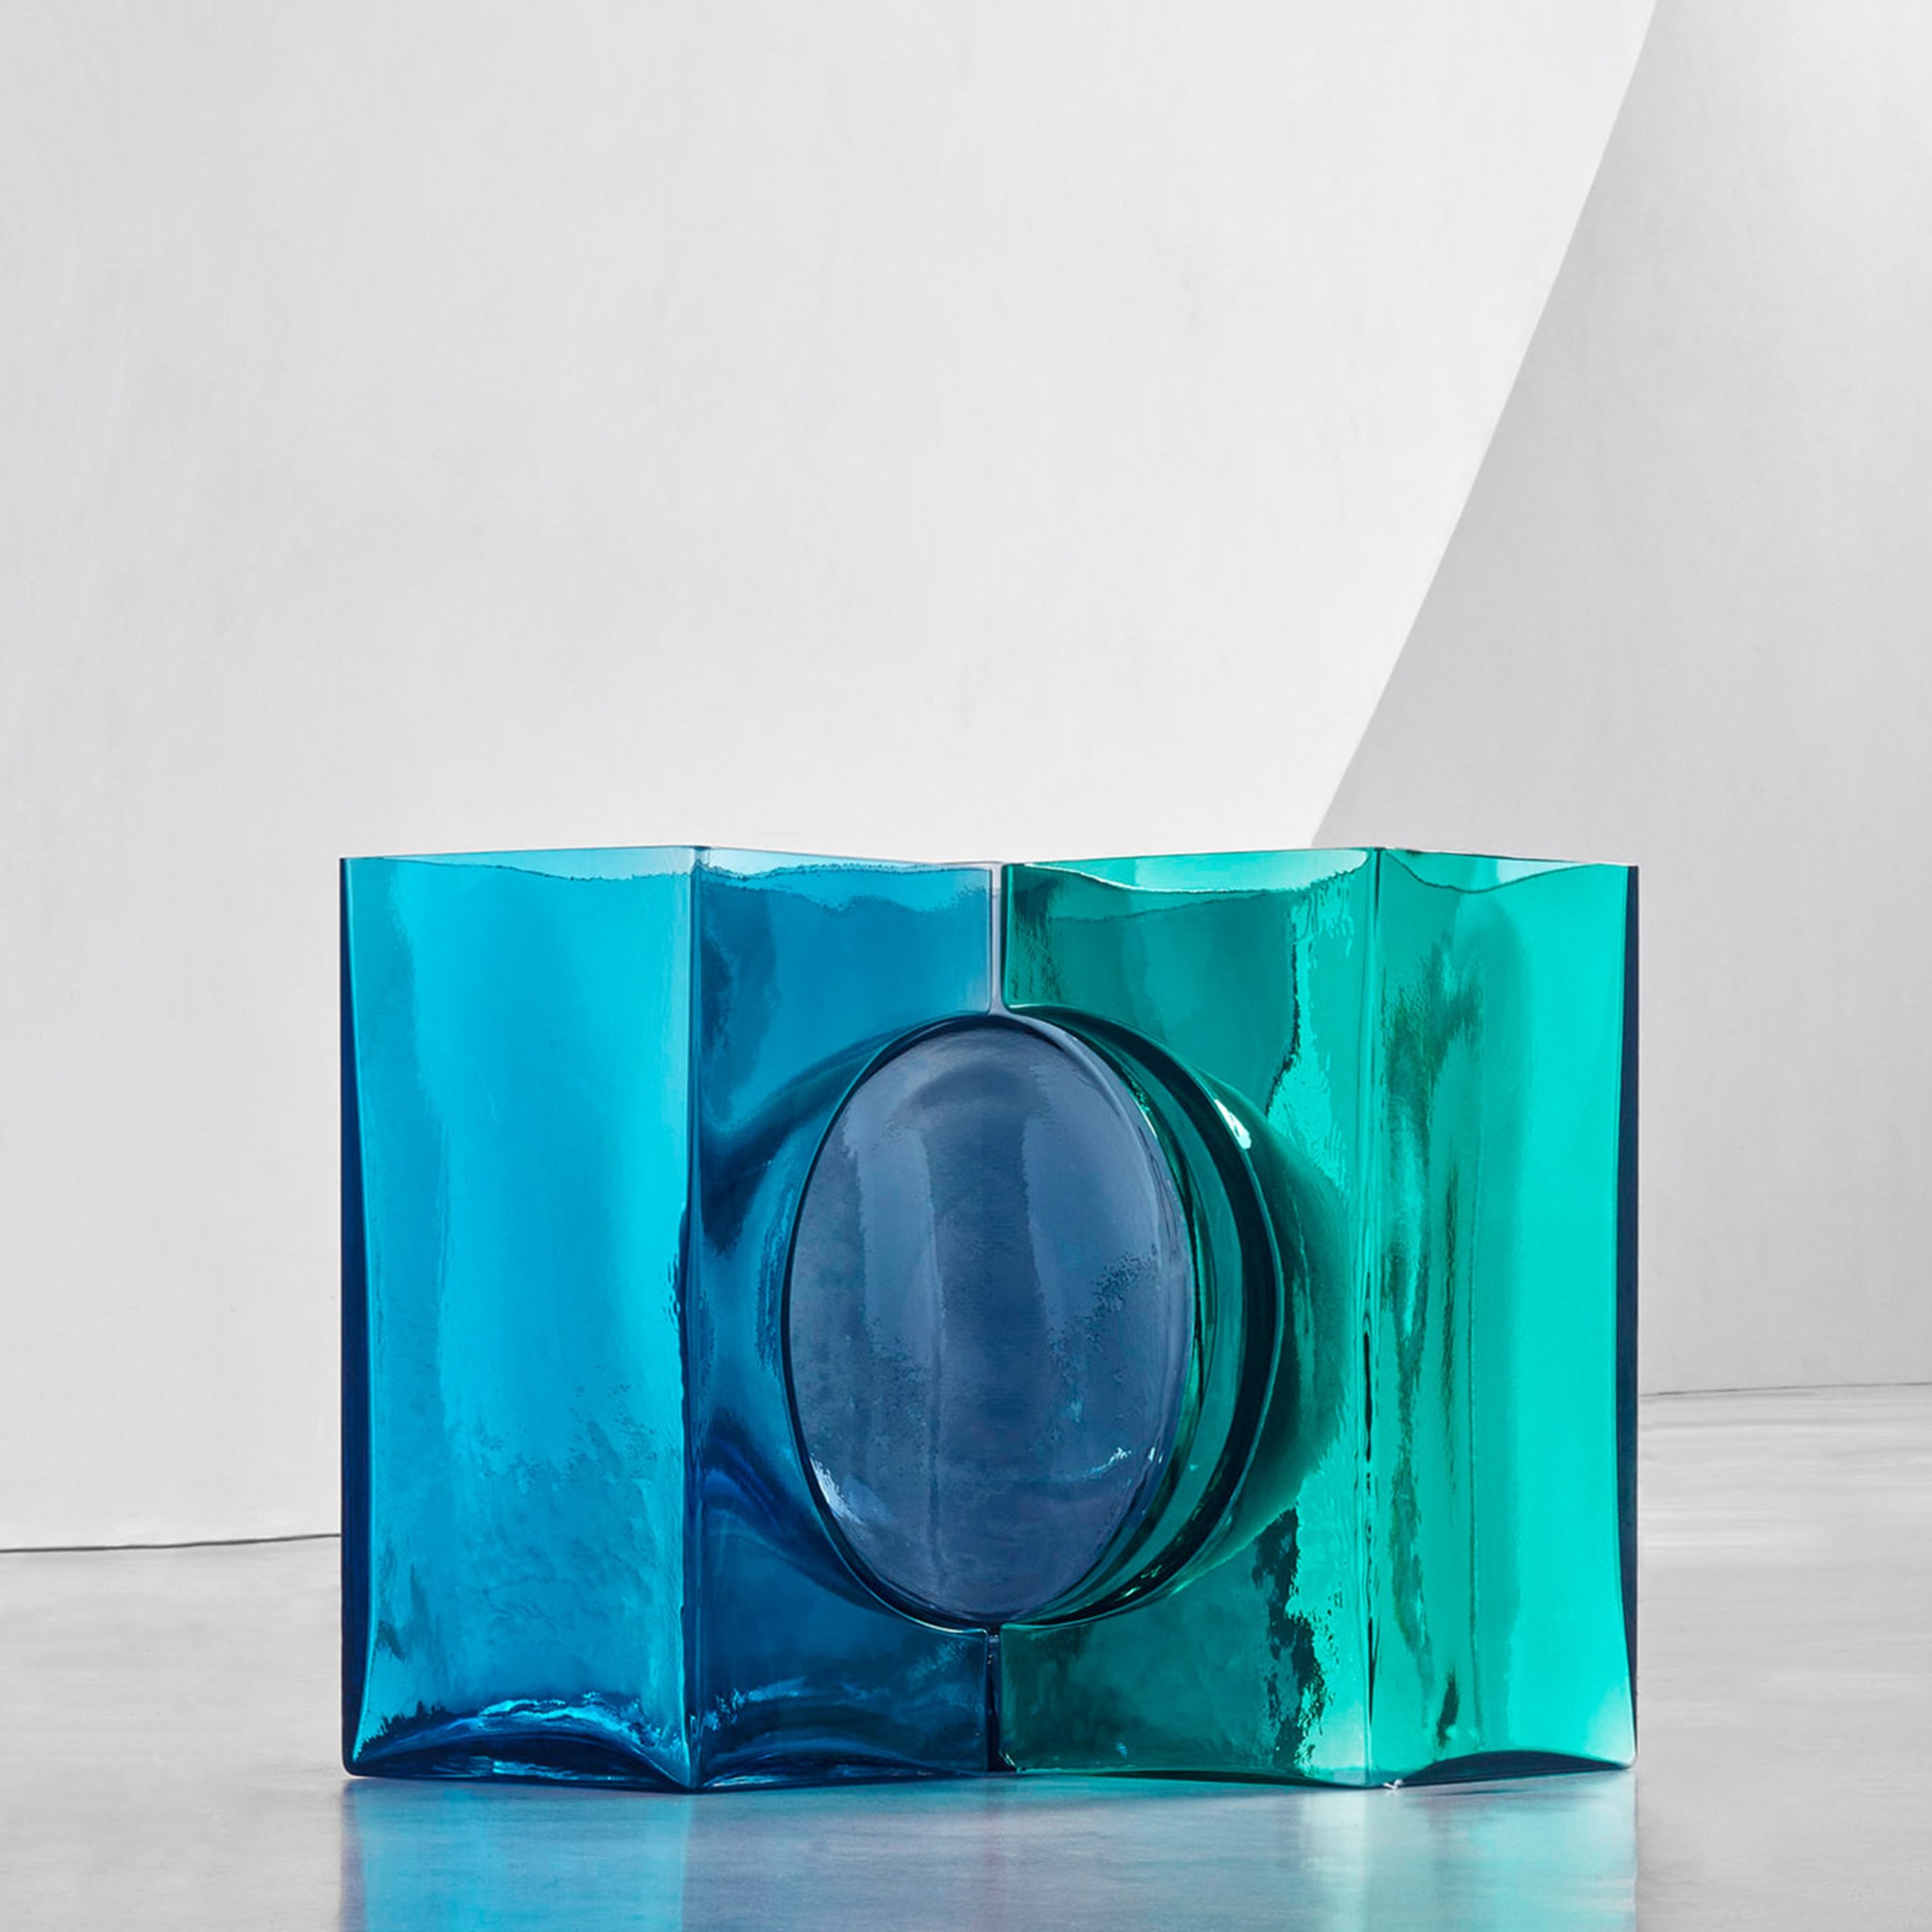 Ando Cosmos Aqua/Green Crystal Sculpture by Tadao Ando - Alternative view 1